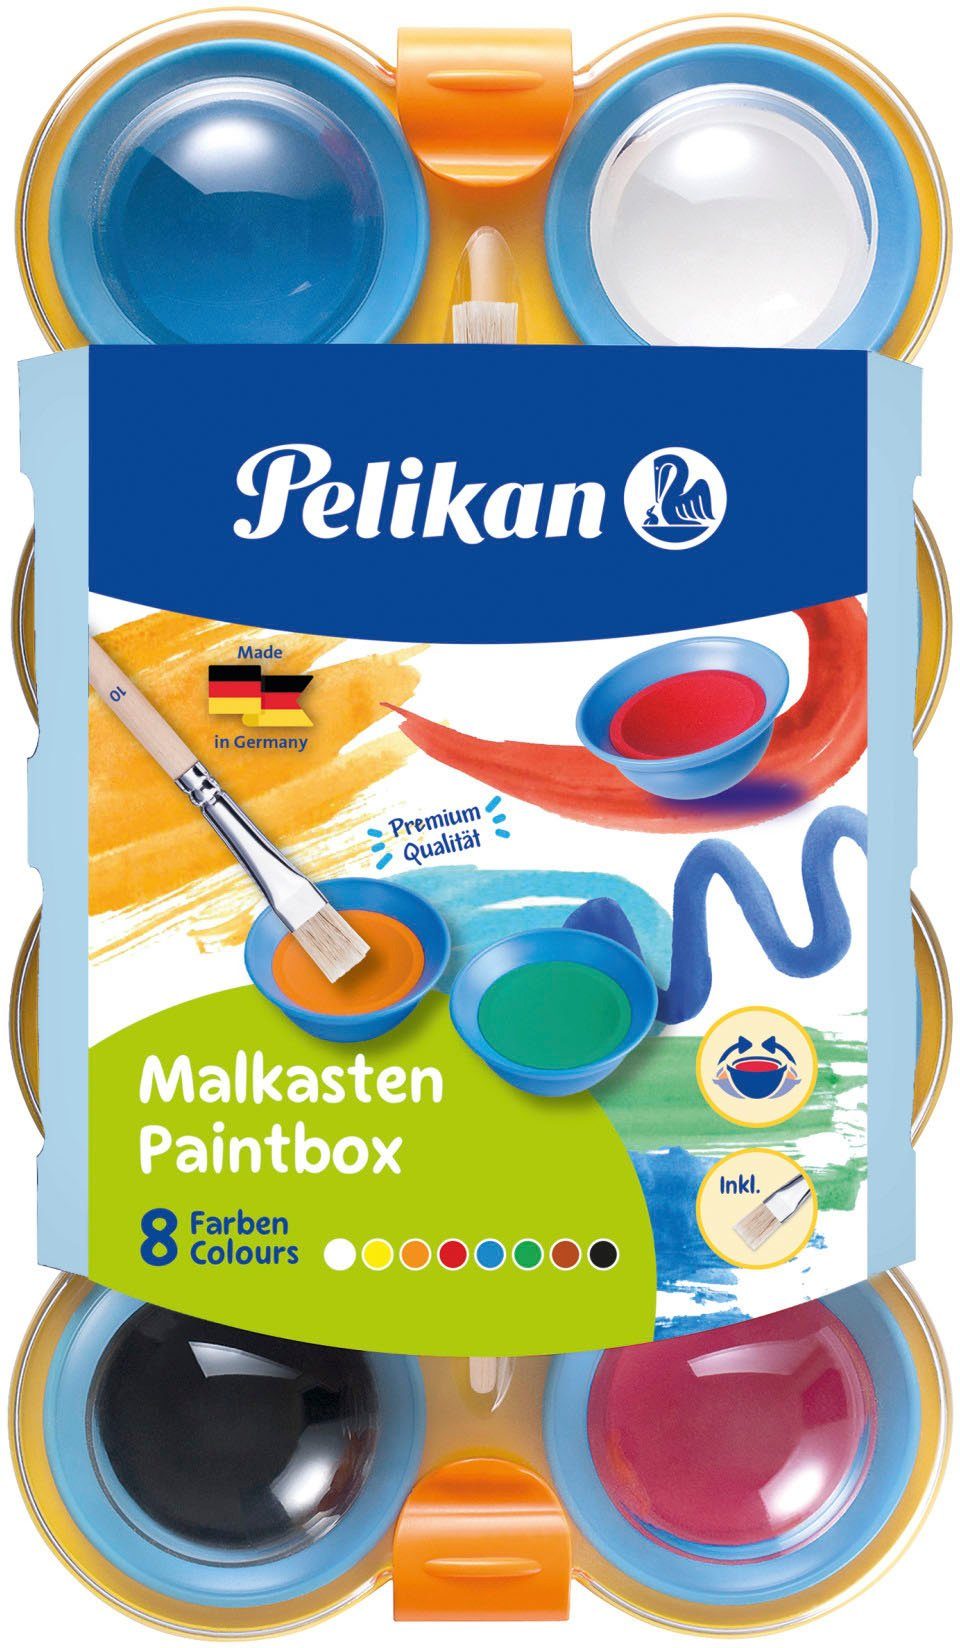 Pelikan Farbkasten Farbkasten für Kinder, 8 Farben, inklusive Pinsel; Made in Germany